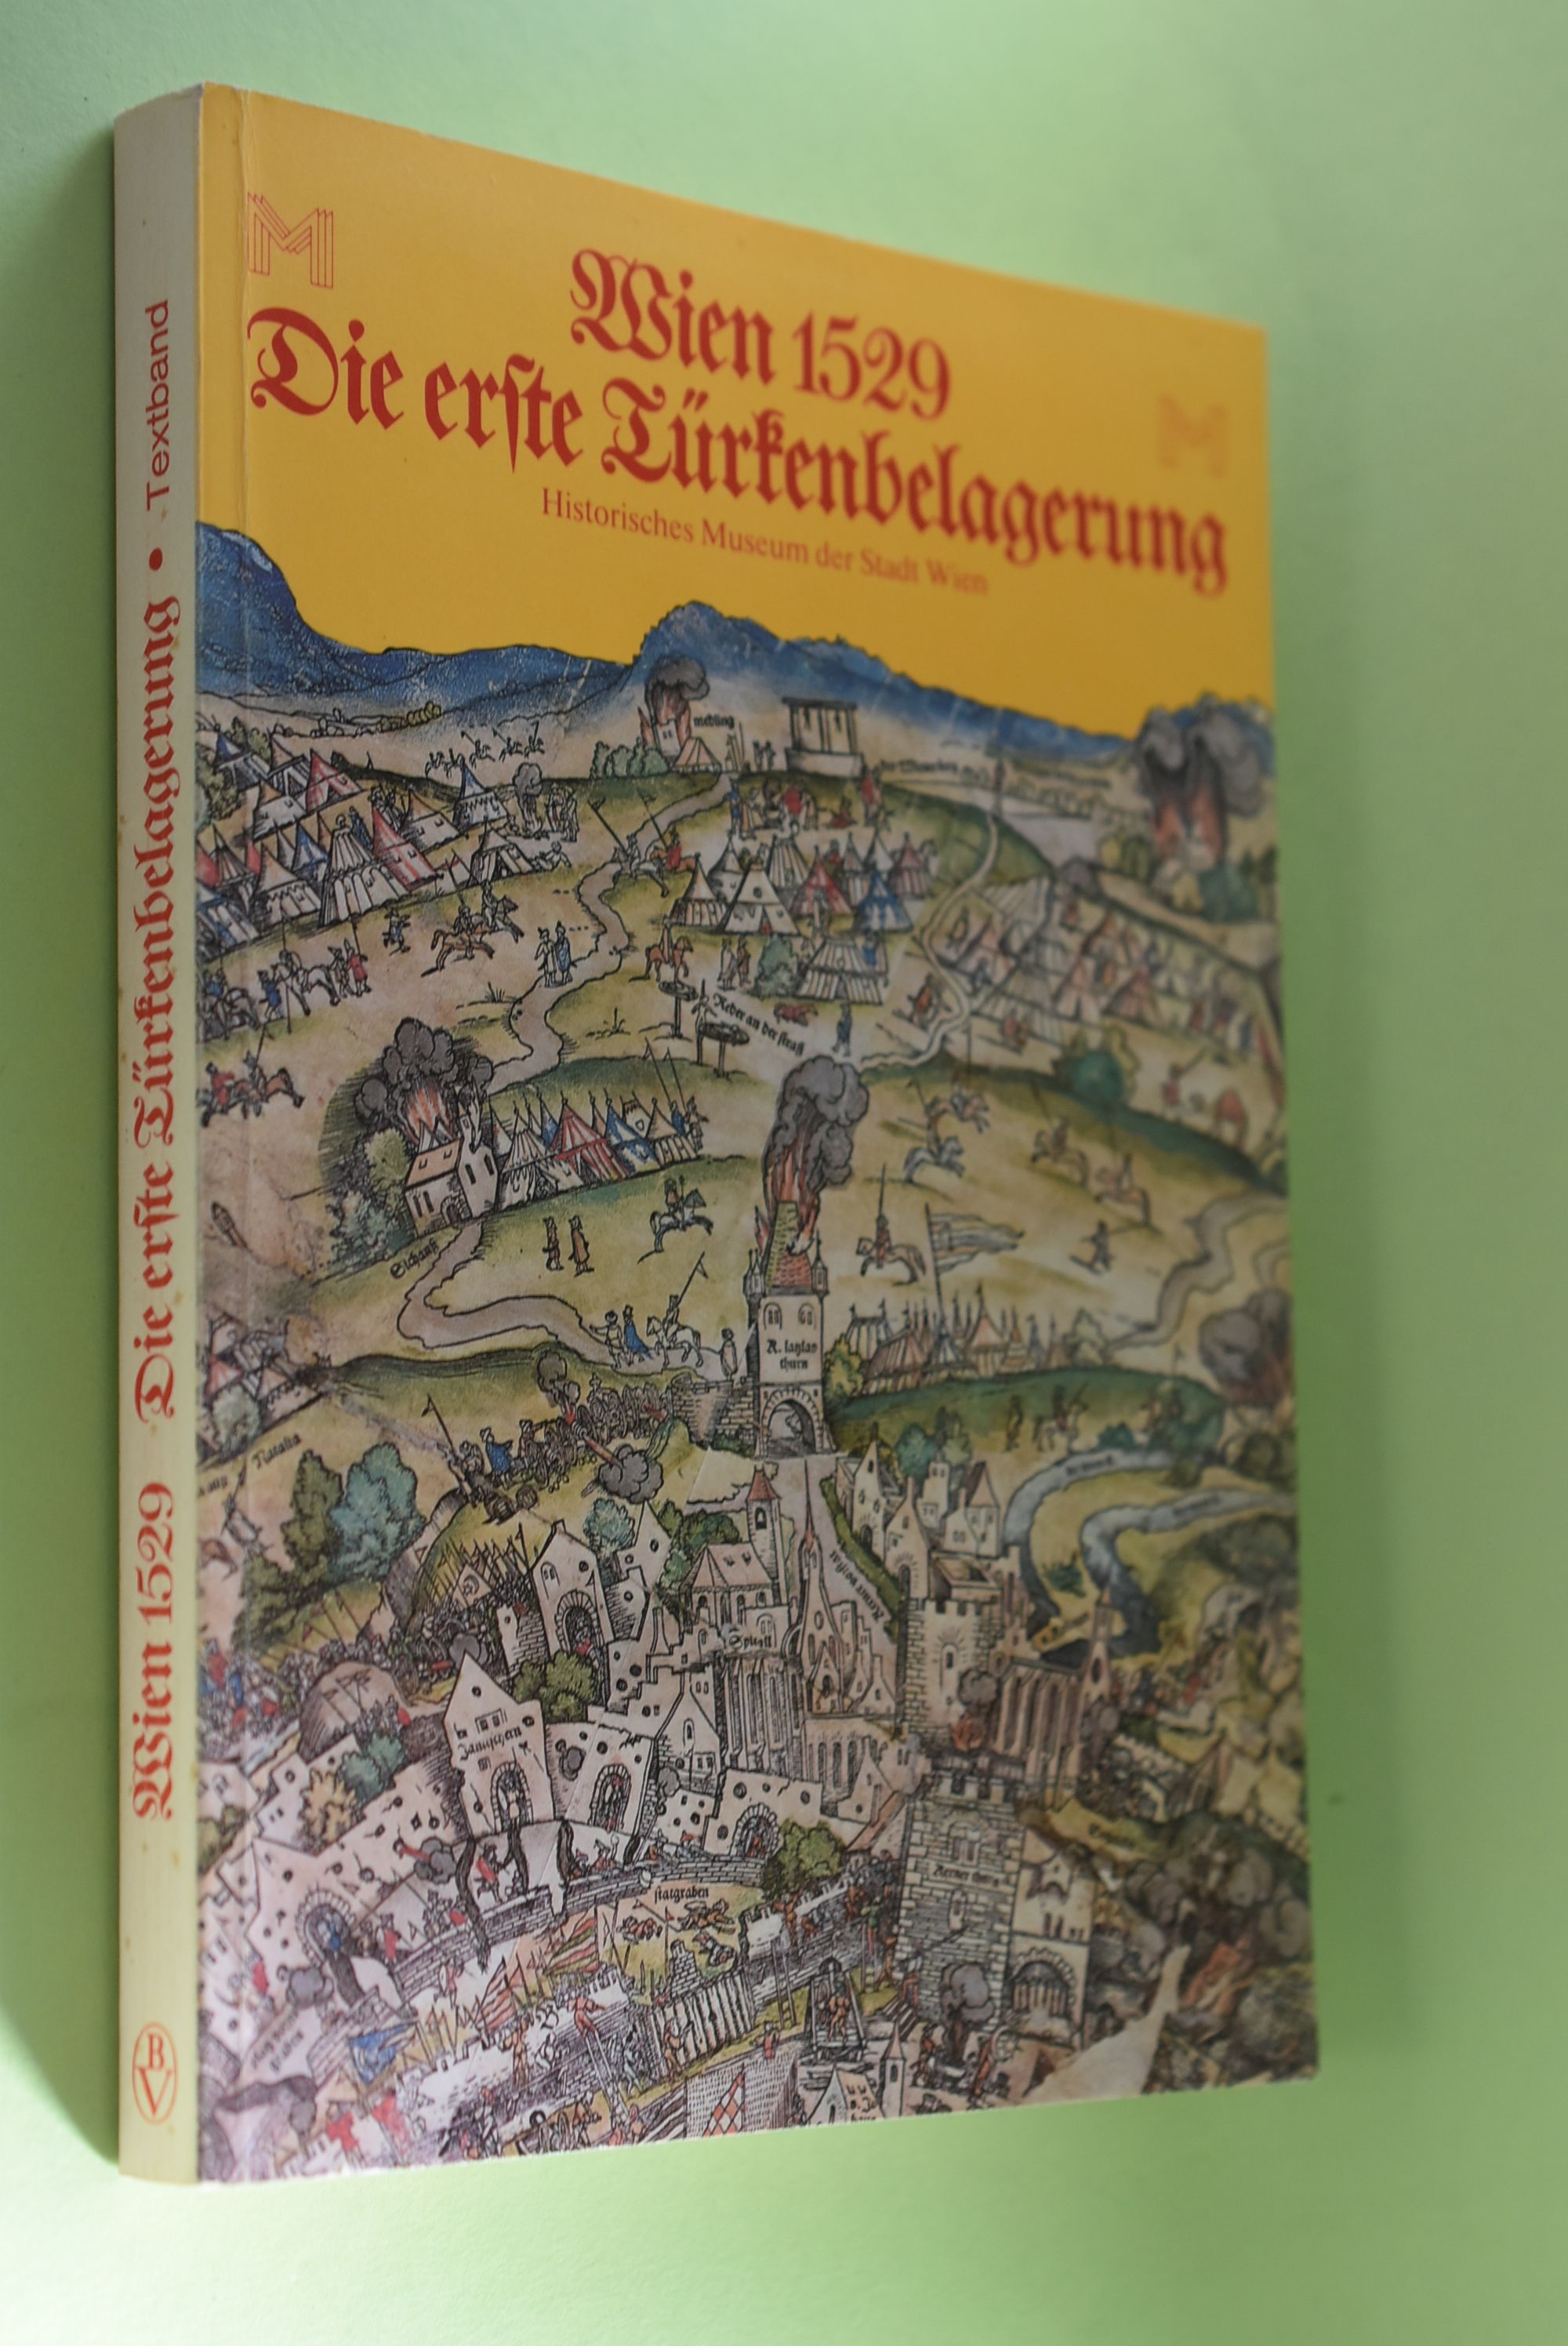 Wien 1529 [fünfzehnhundertneunundzwanzig], die erste Türkenbelagerung- Textband. [Red.: Günter Düriegl] - Düriegl, Günter (Herausgeber)